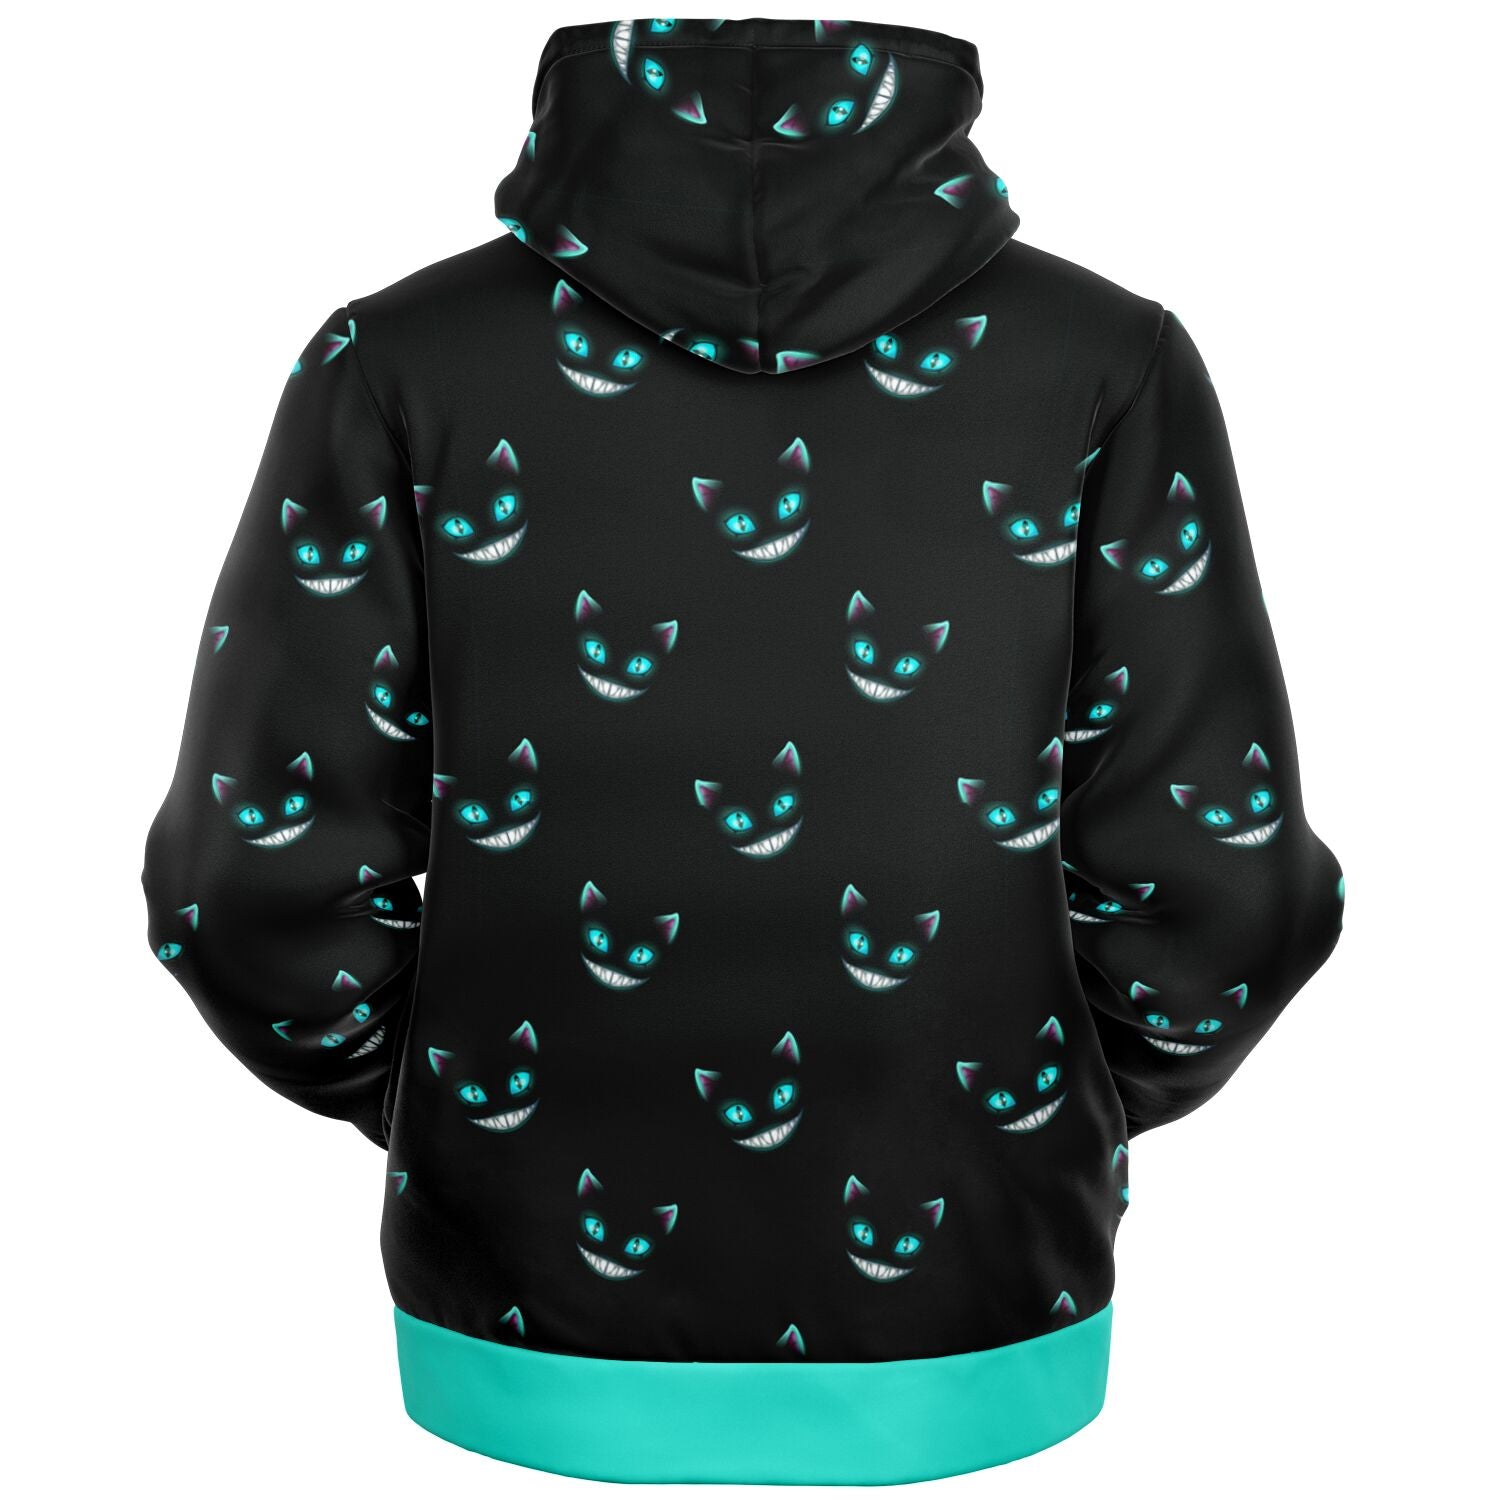 Cheshire Cat Microfleece Zip hoodie (smaller pattern)